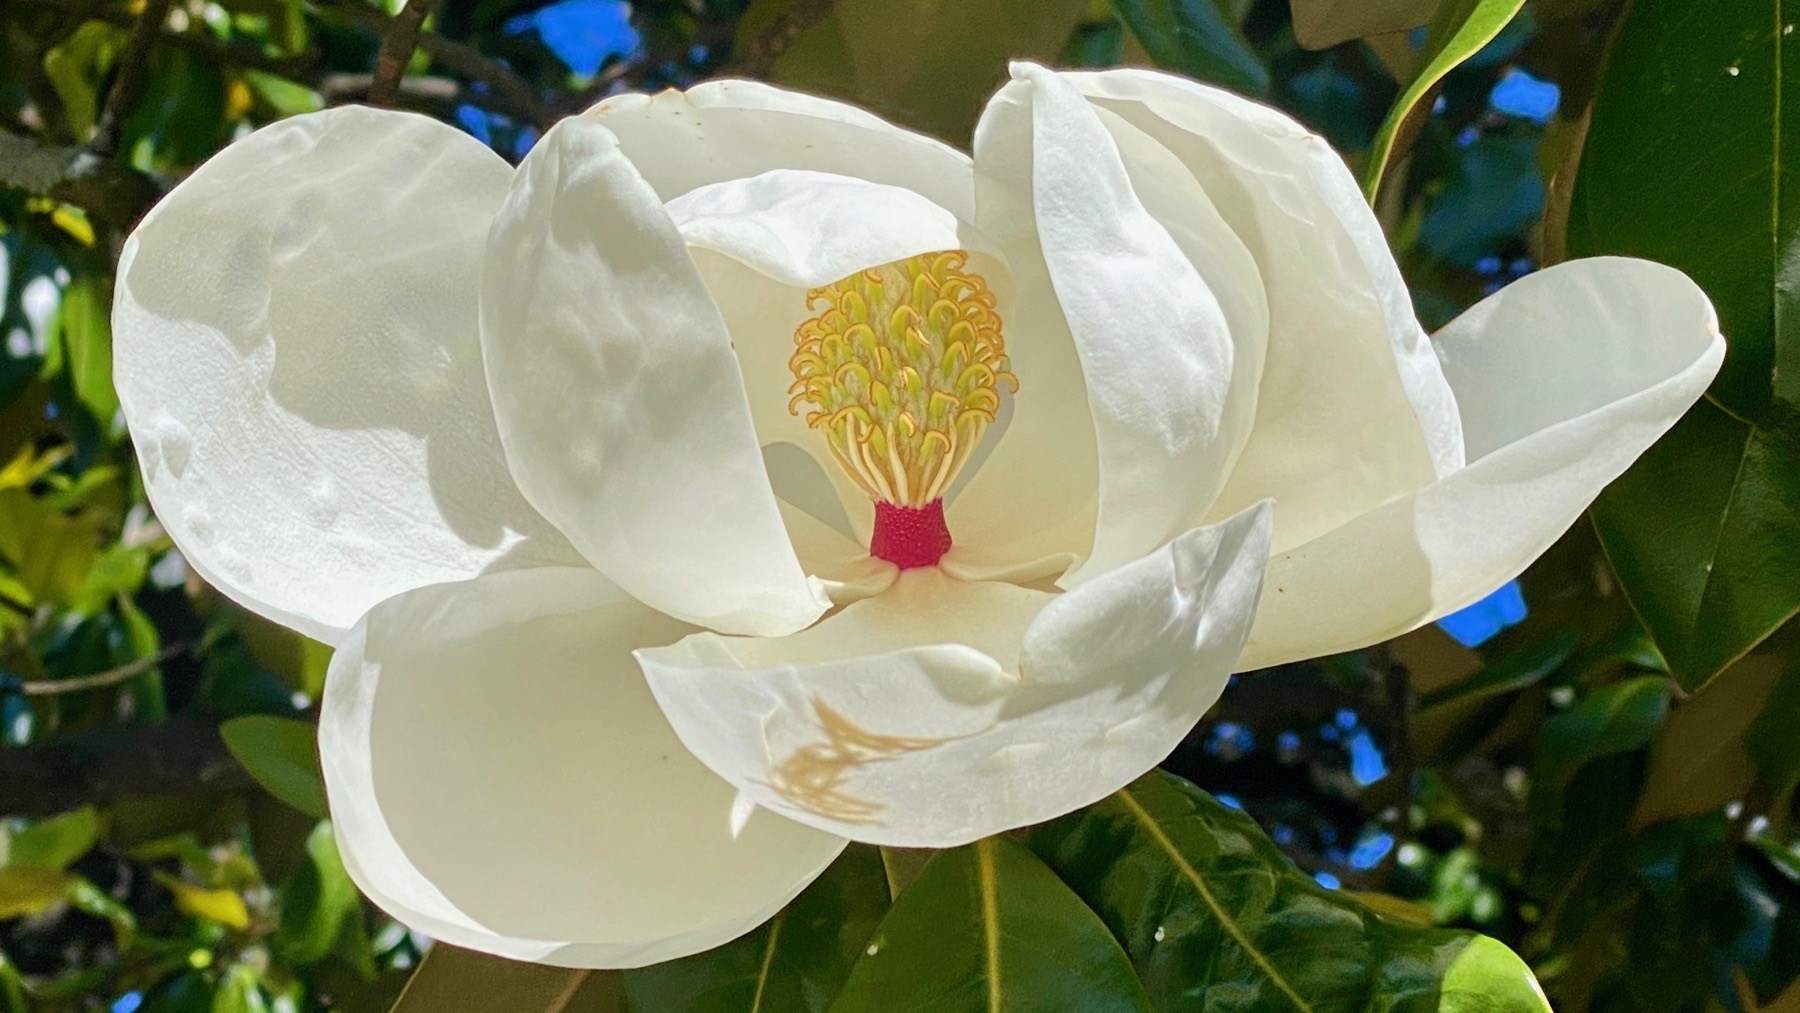 Magnolia no bee